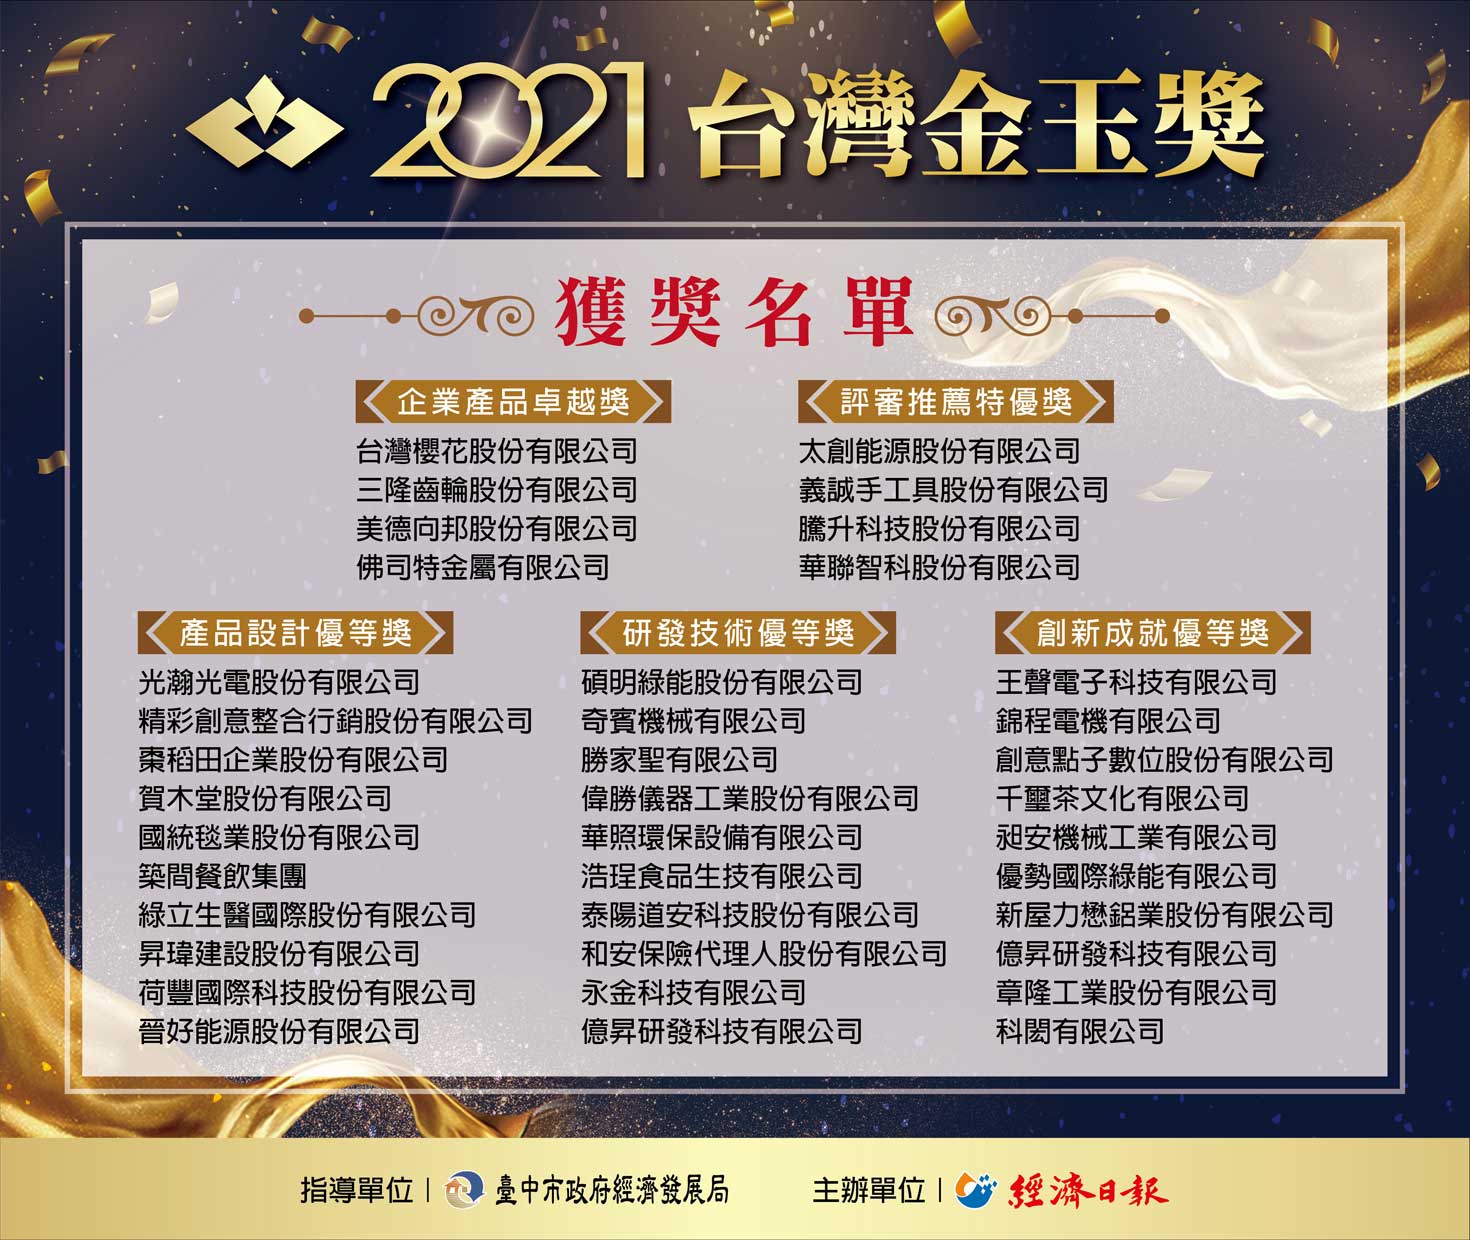 2021 台灣金玉獎 得獎名單